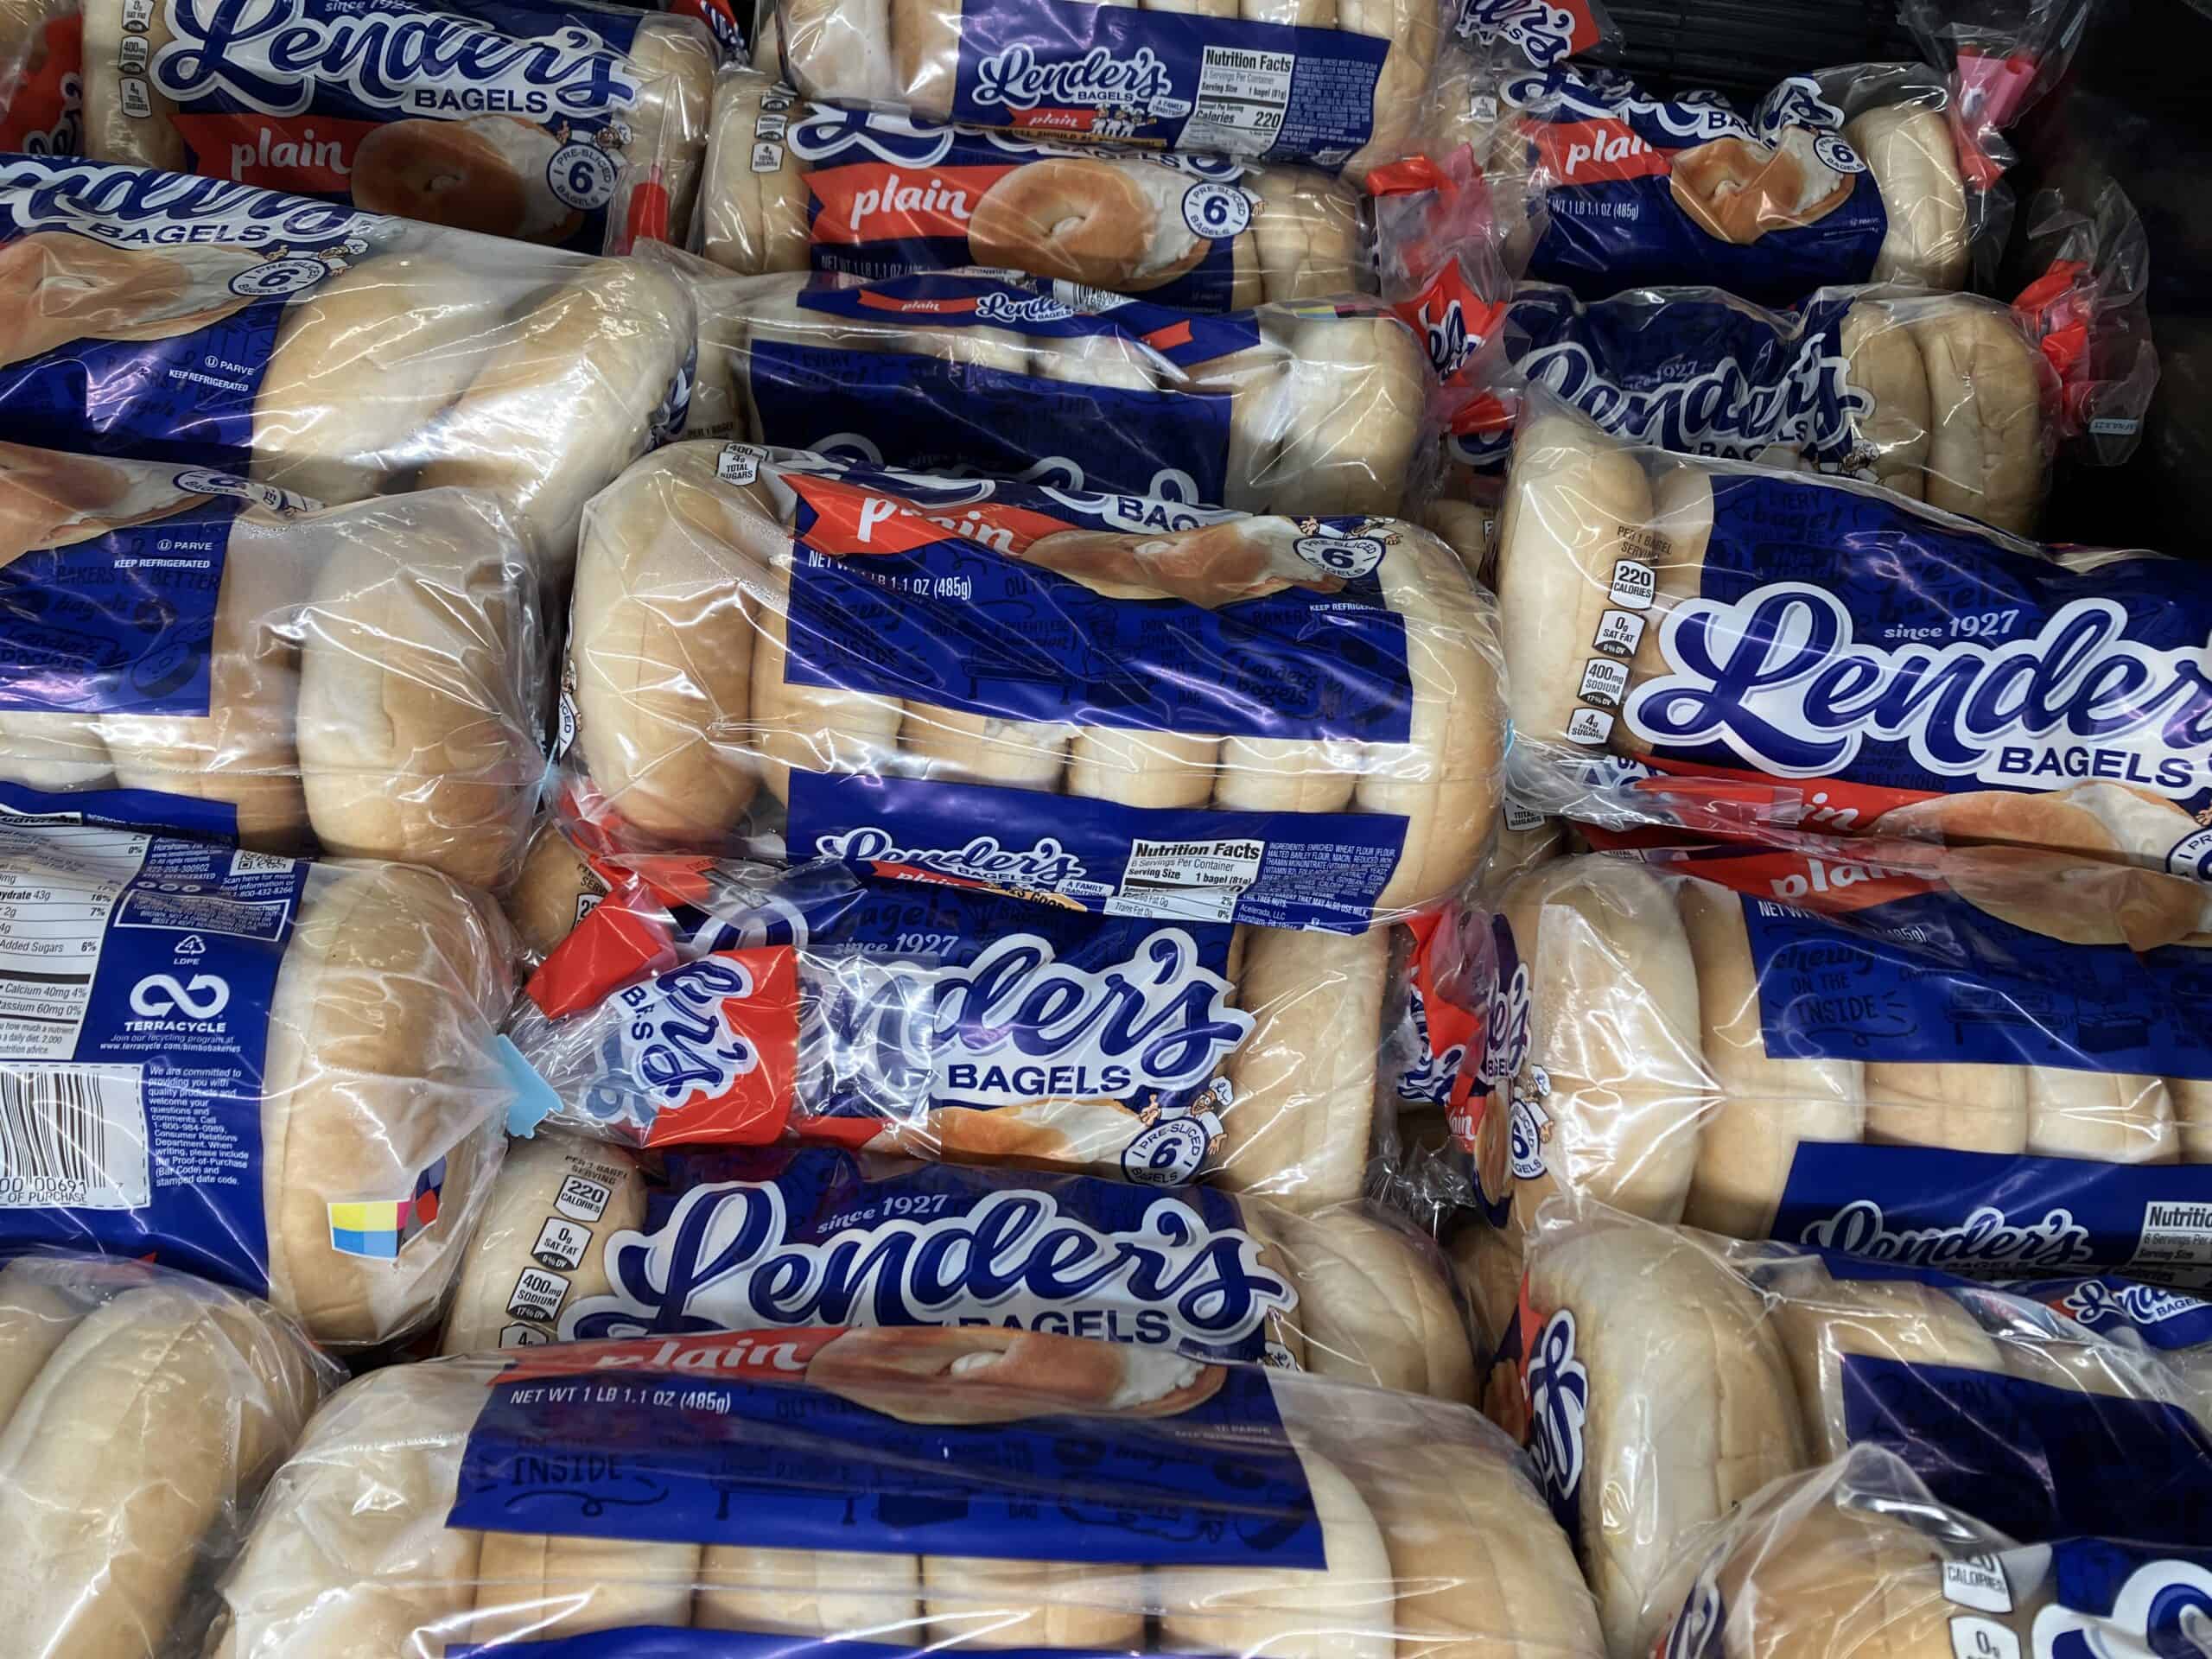 Lender's Bagels